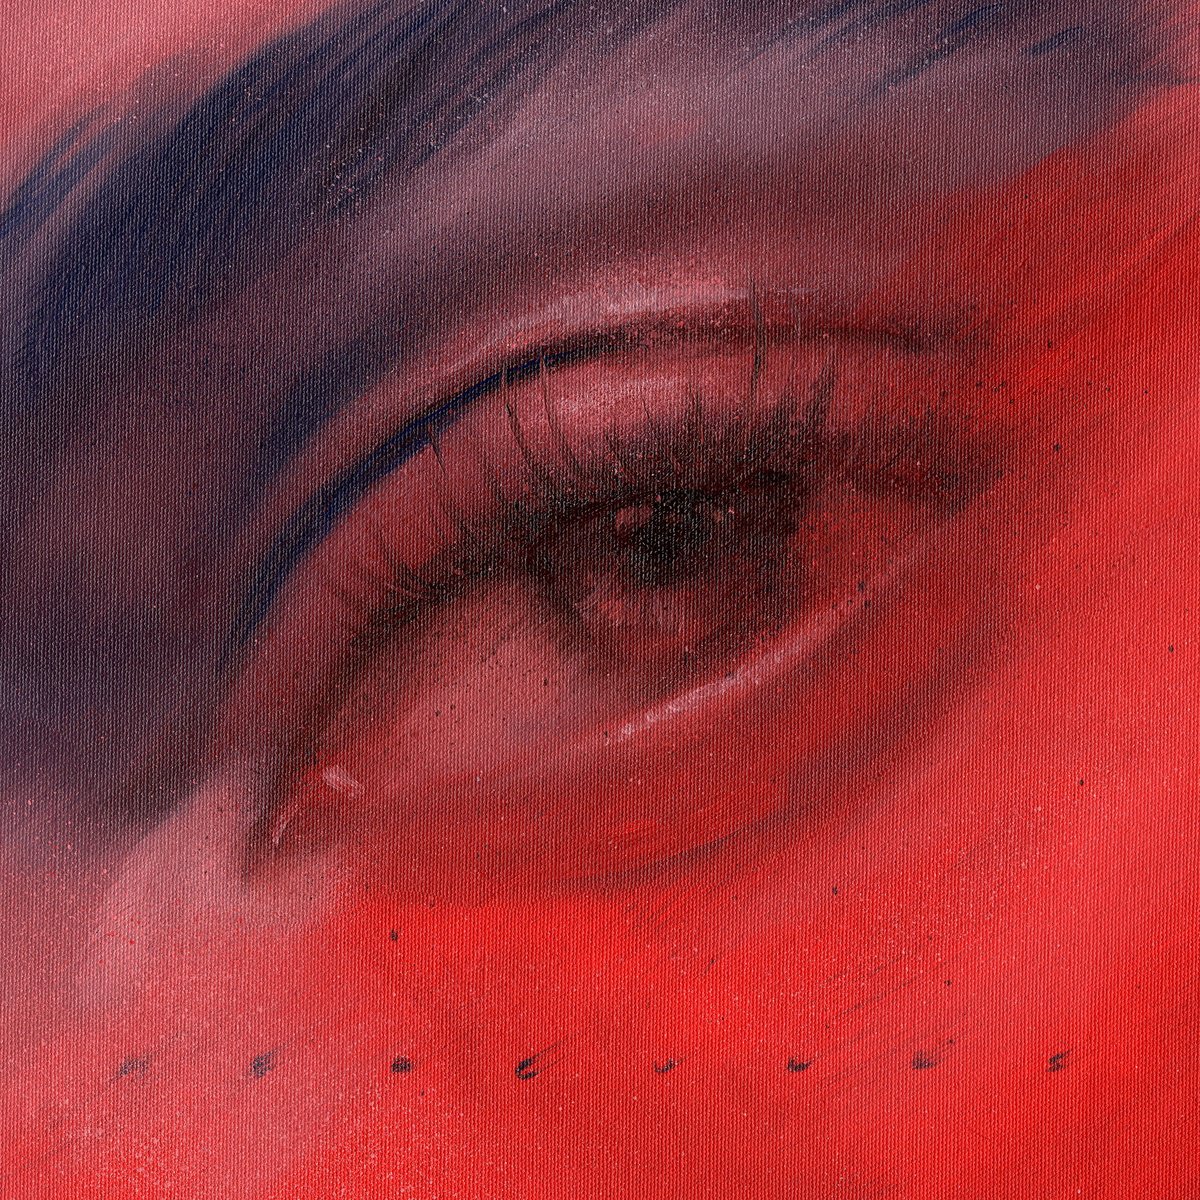 eye in red and blue by Renske Karlien Hercules